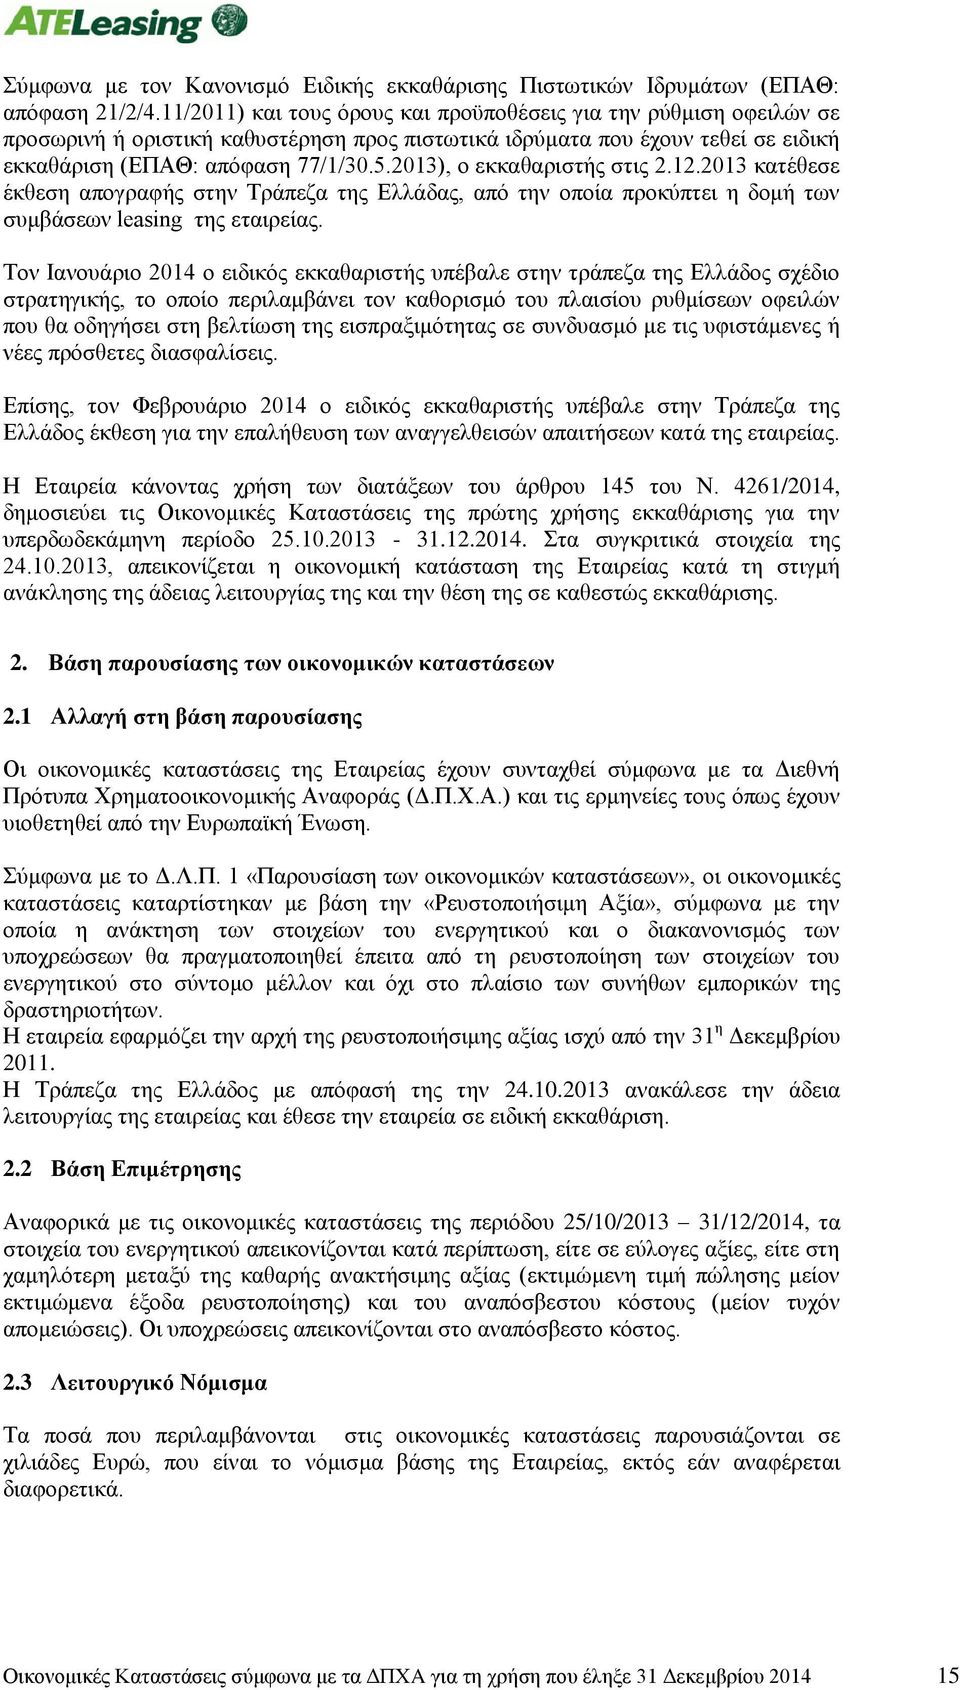 2013), ο εκκαθαριστής στις 2.12.2013 κατέθεσε έκθεση απογραφής στην Τράπεζα της Ελλάδας, από την οποία προκύπτει η δομή των συμβάσεων leasing της εταιρείας.